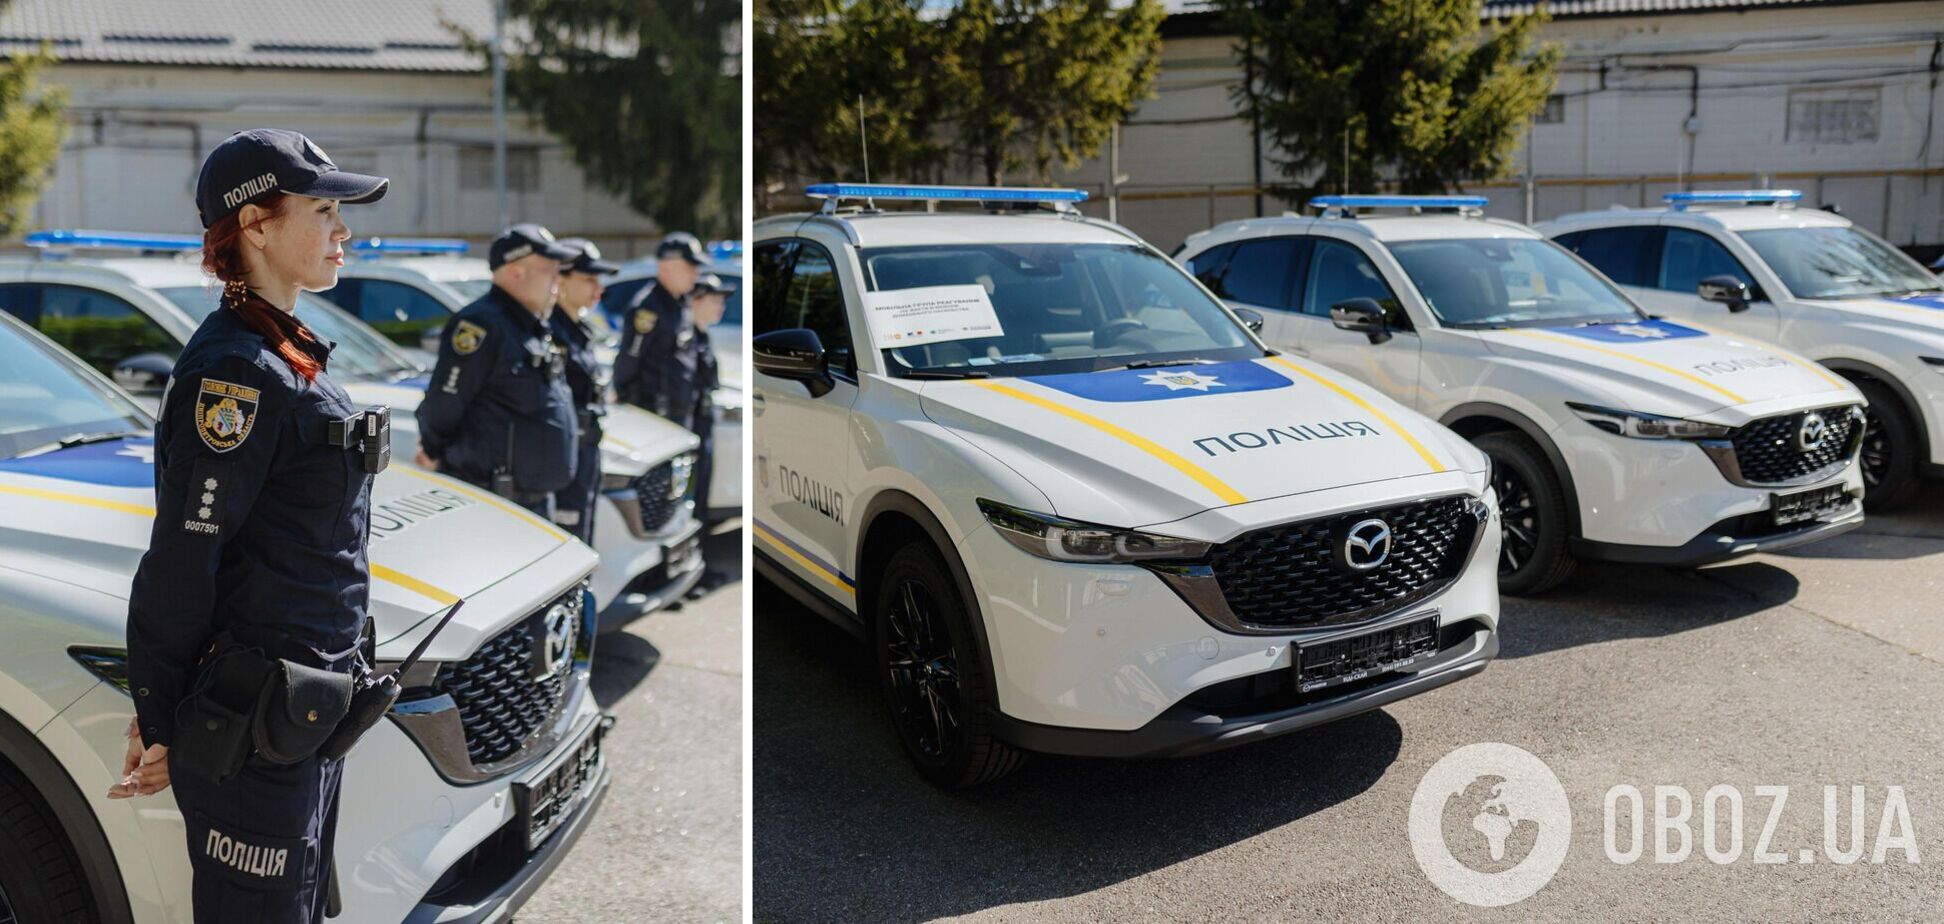 Франция передала Украине 13 автомобилей для мобильных групп полиции по противодействию домашнему насилию